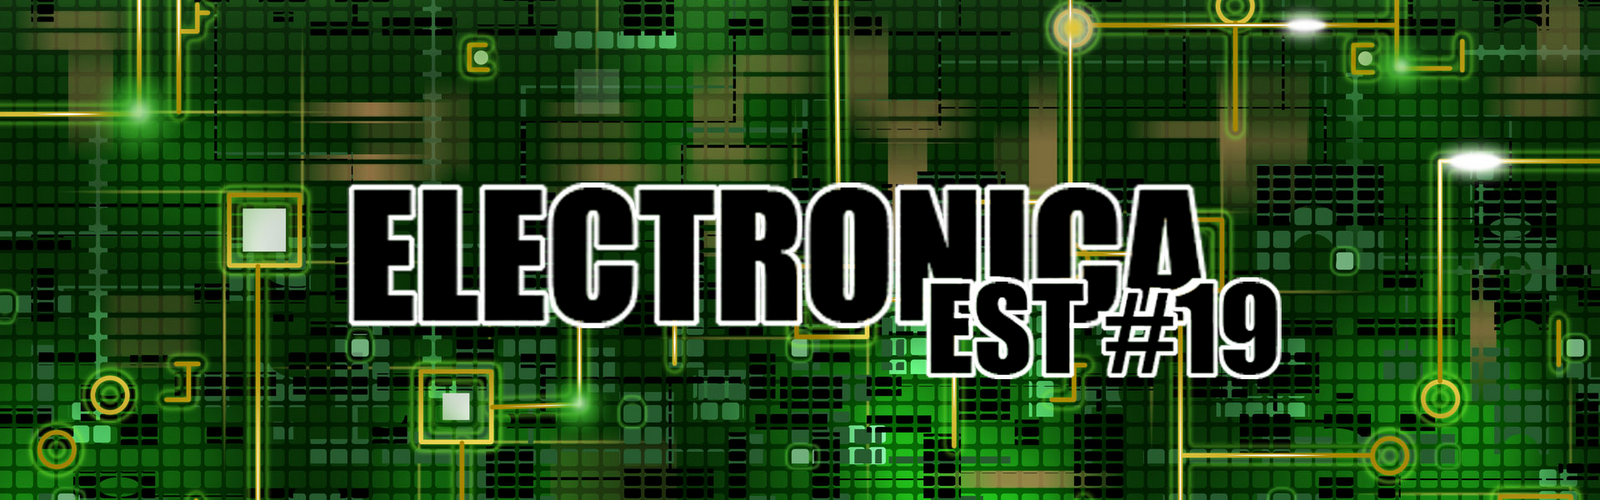 Electronica E.S.T #19 